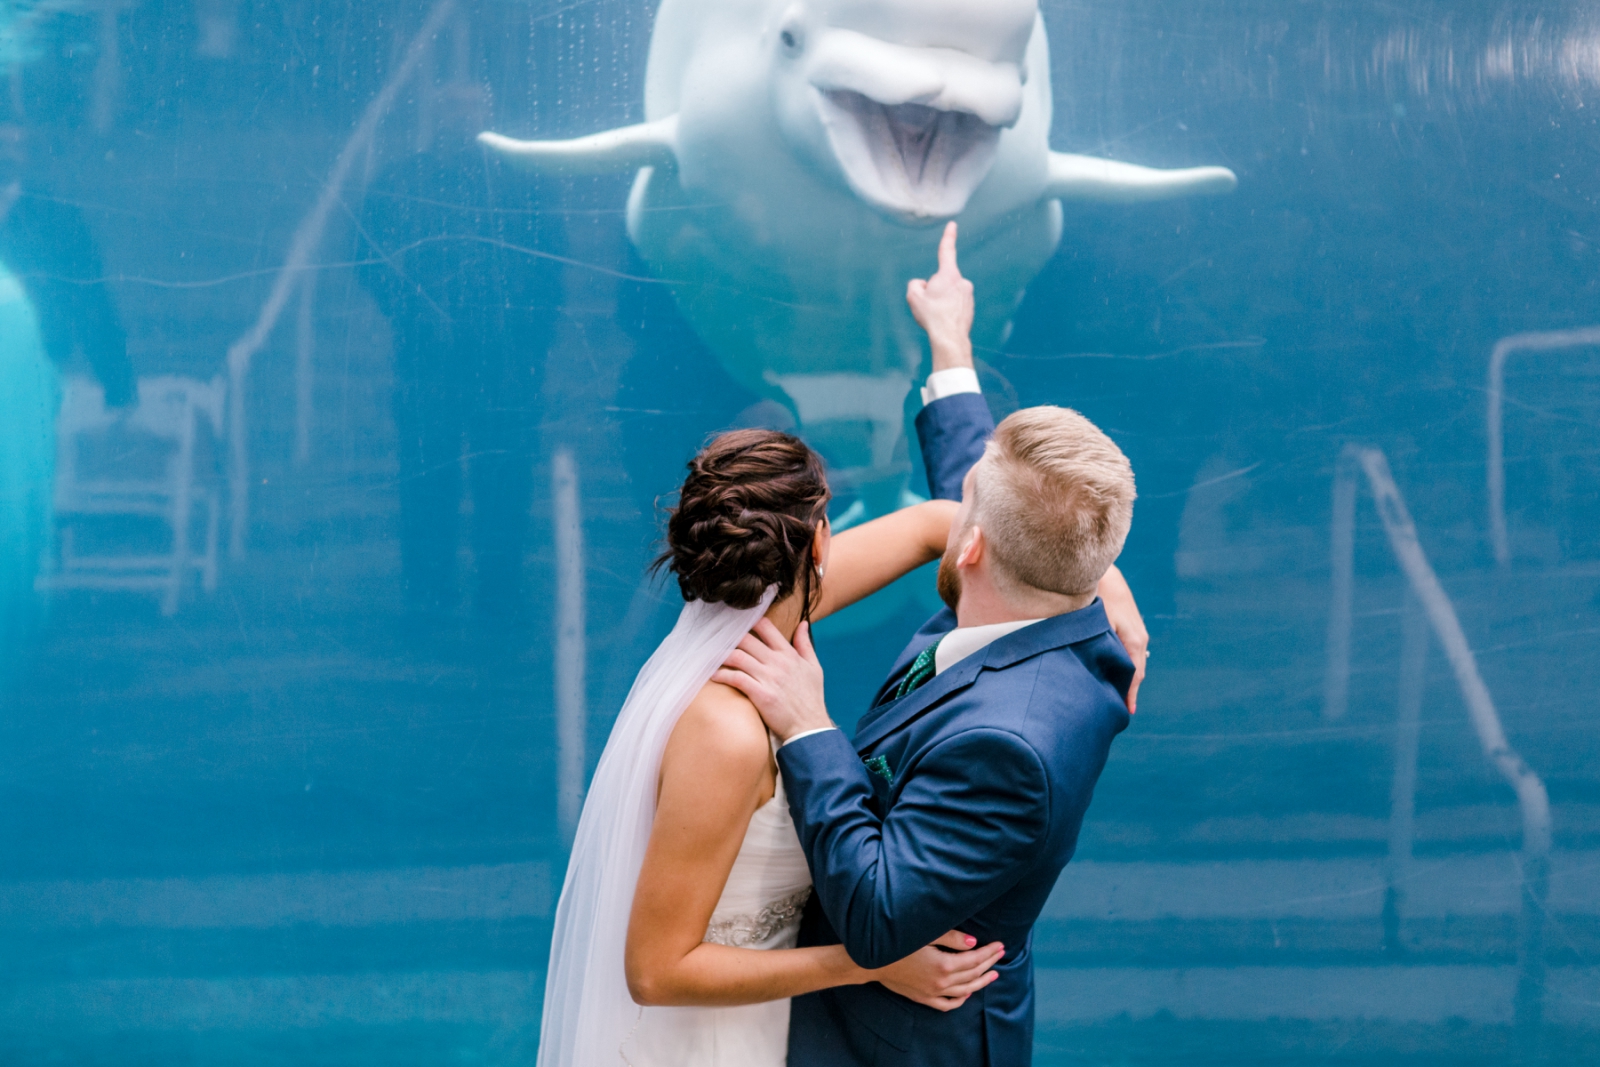 Mystic Aquarium Wedding